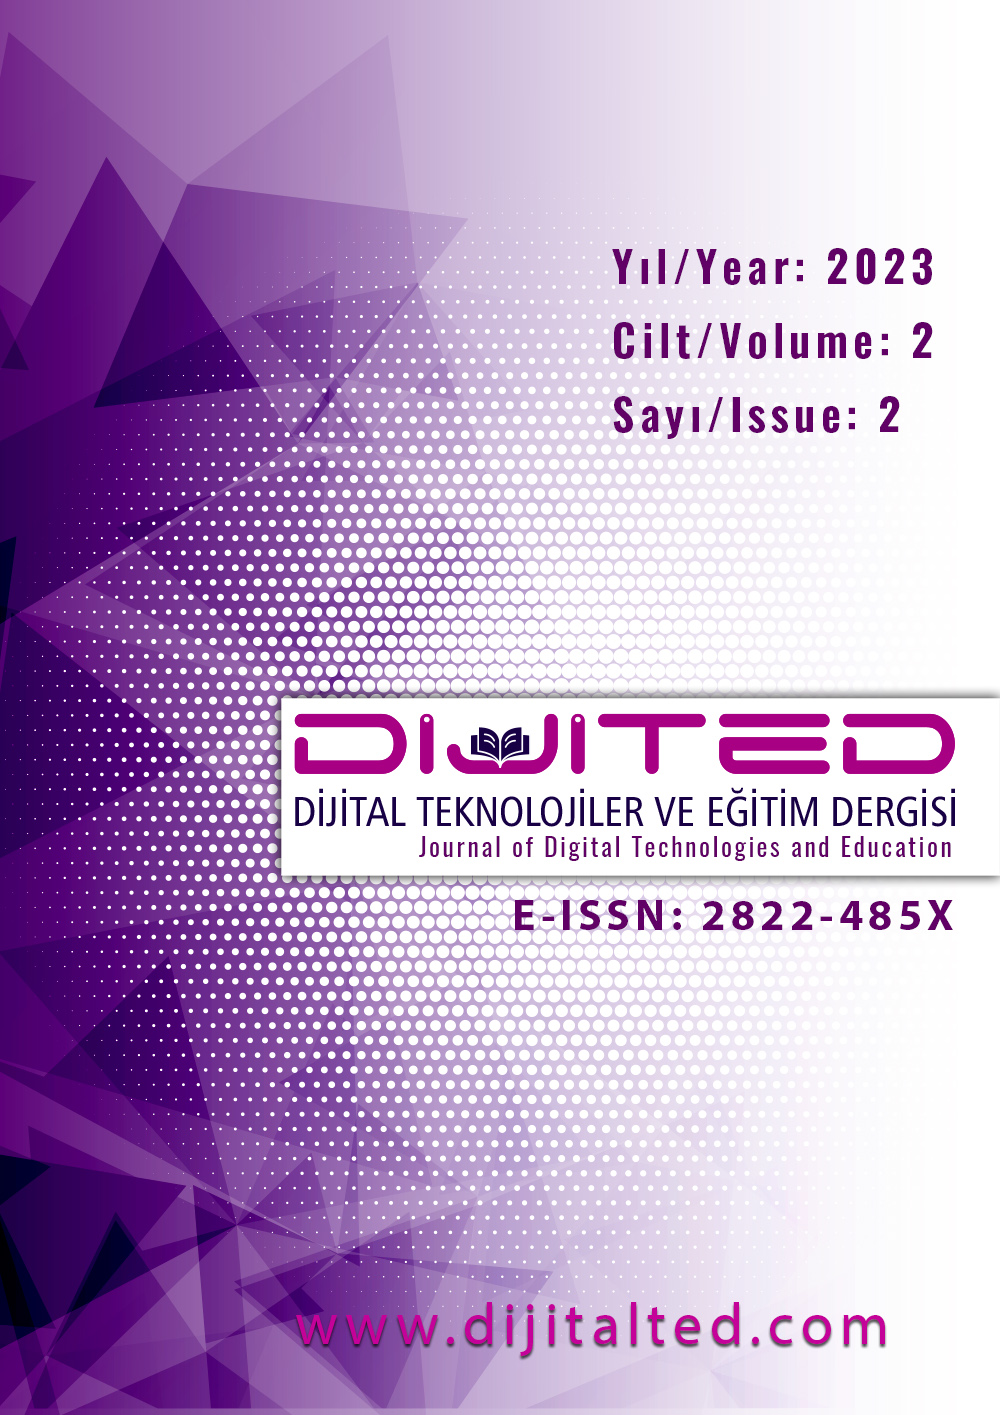 					Cilt 2 Sayı 2 (2023): Dijital Teknolojiler ve Eğitim Dergisi Gör
				